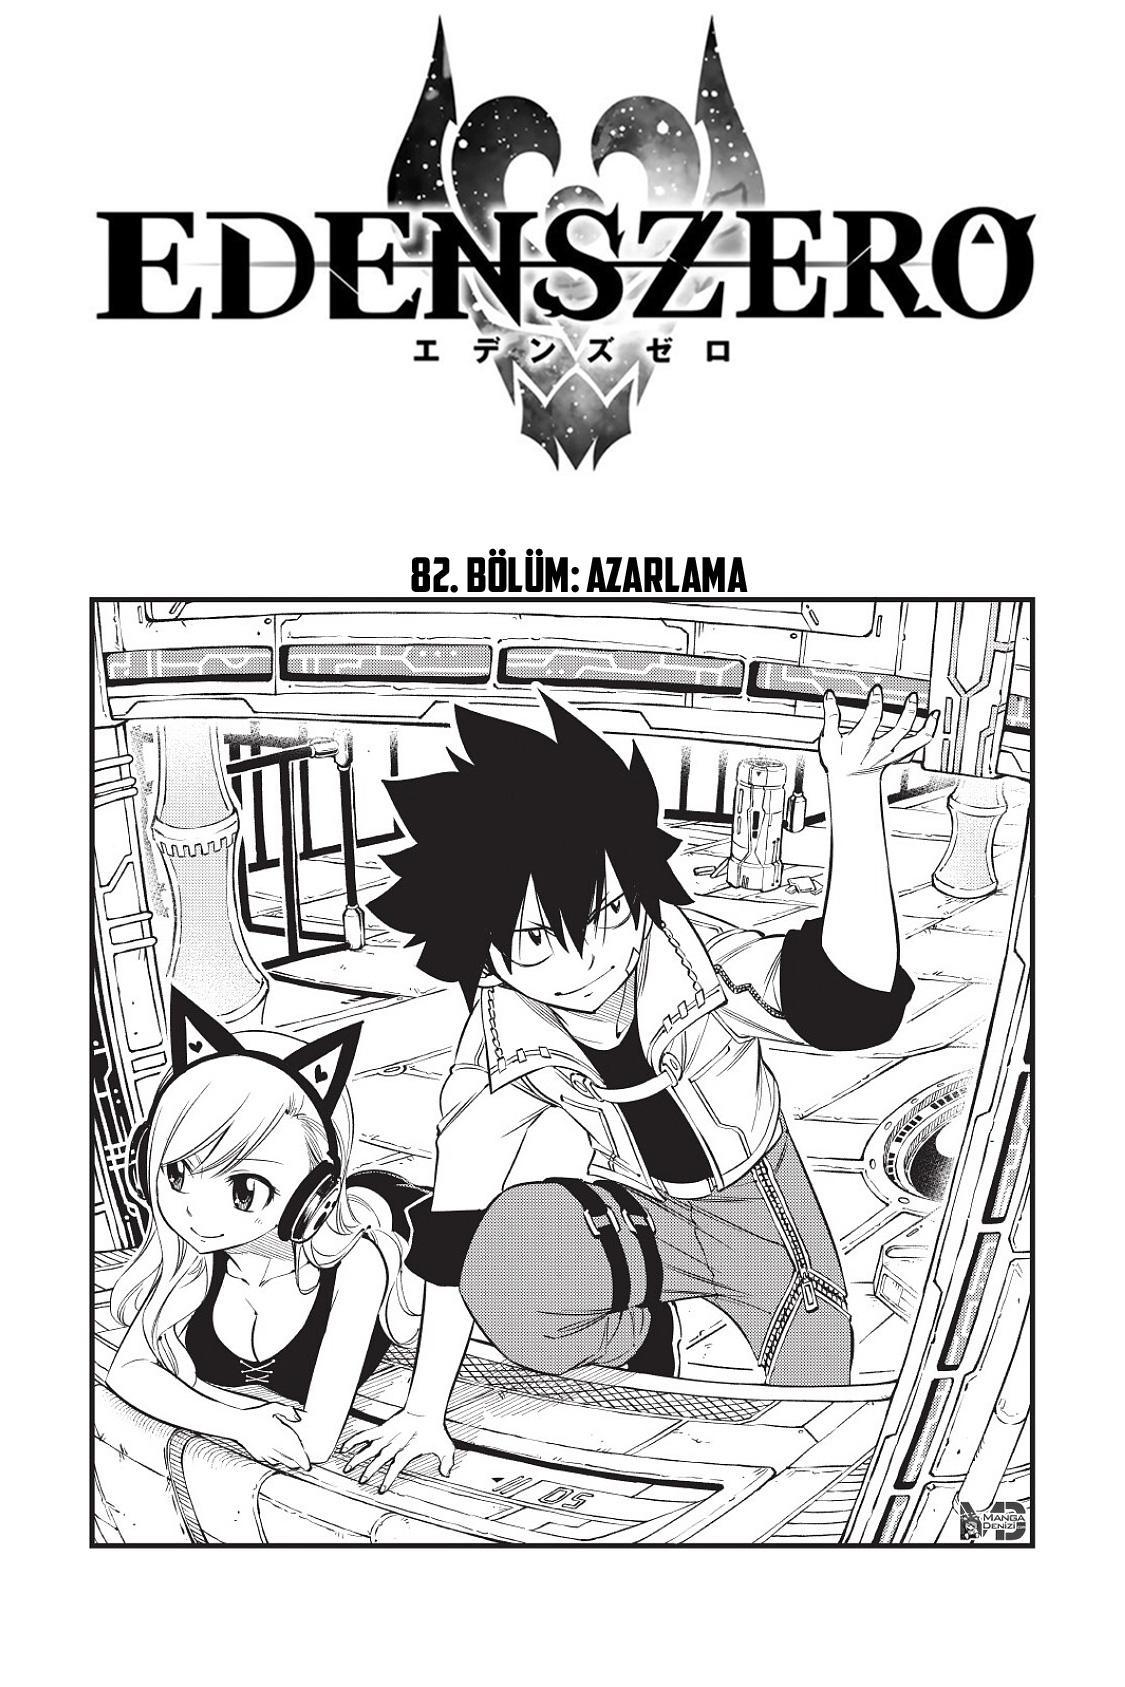 Eden's Zero mangasının 082 bölümünün 2. sayfasını okuyorsunuz.